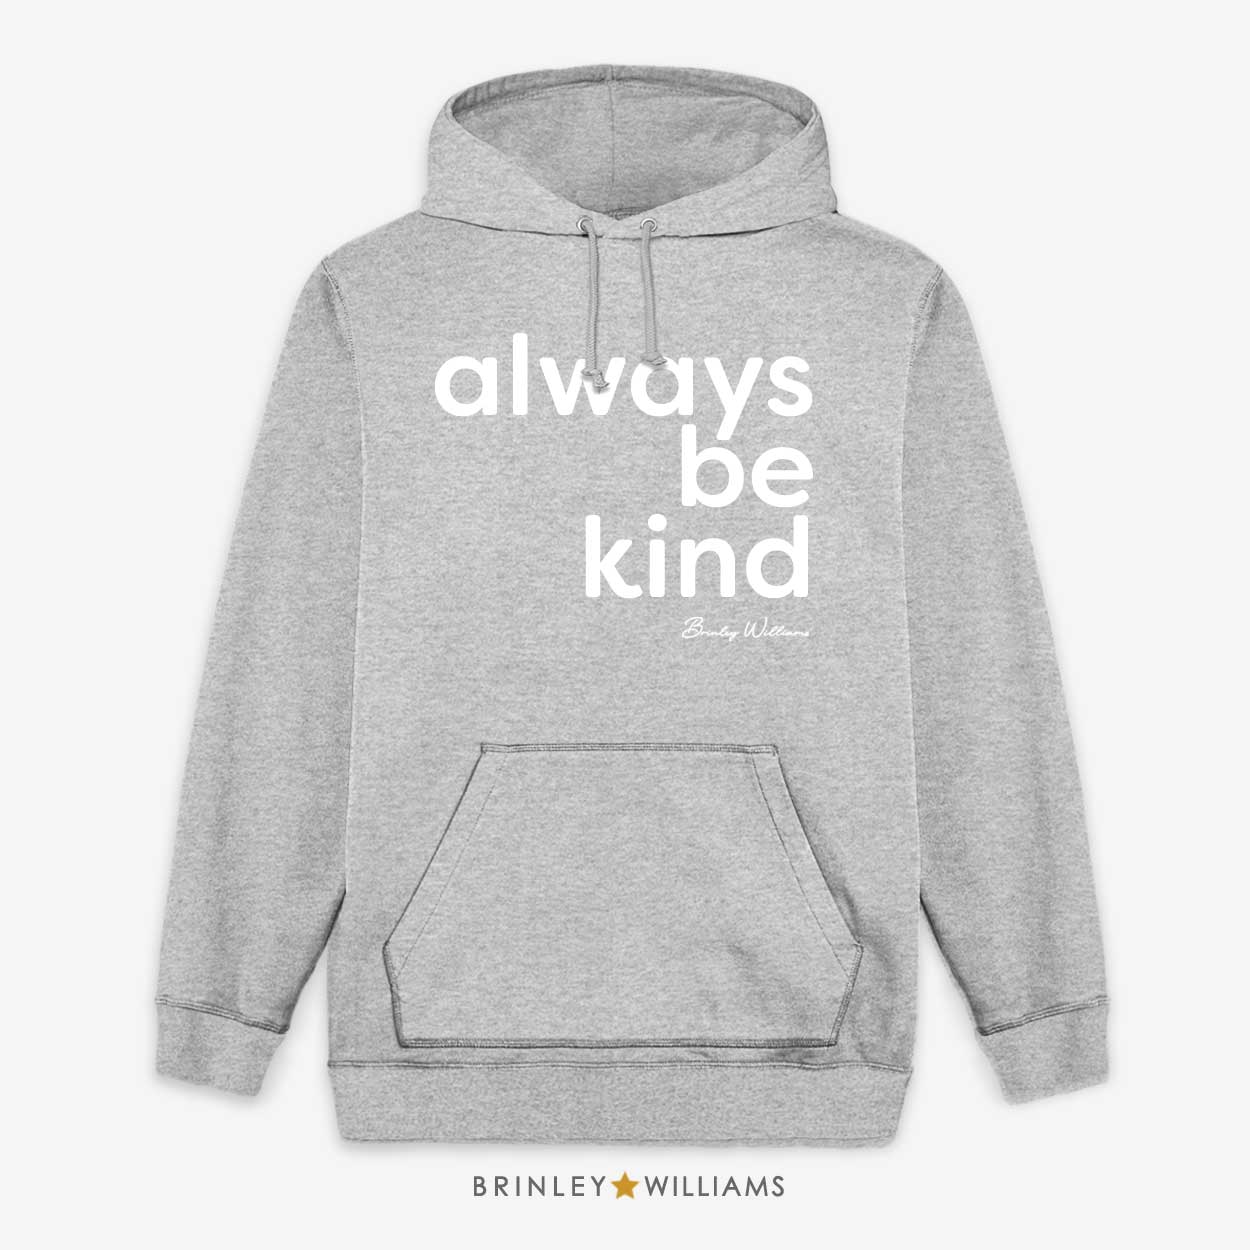 Always be kind Unisex Hoodie - Heather Grey